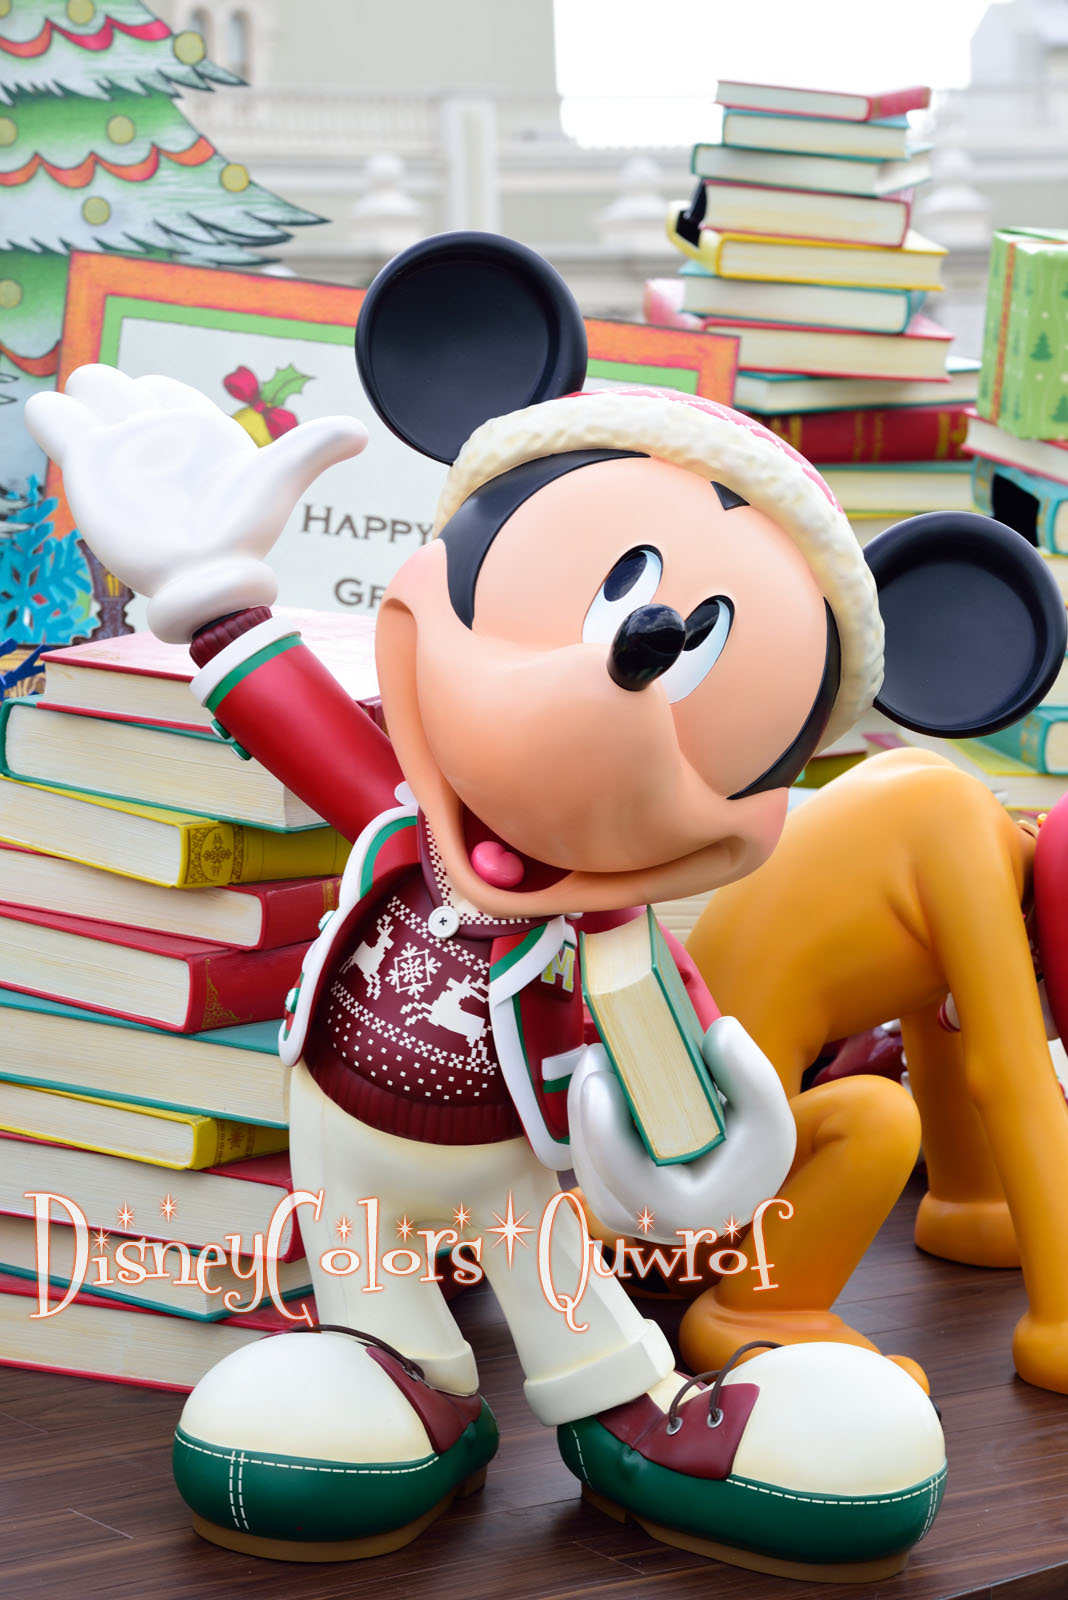 ディズニーランド クリスマス ファンタジー2015 デコレーション特集 Disney Colors Blog